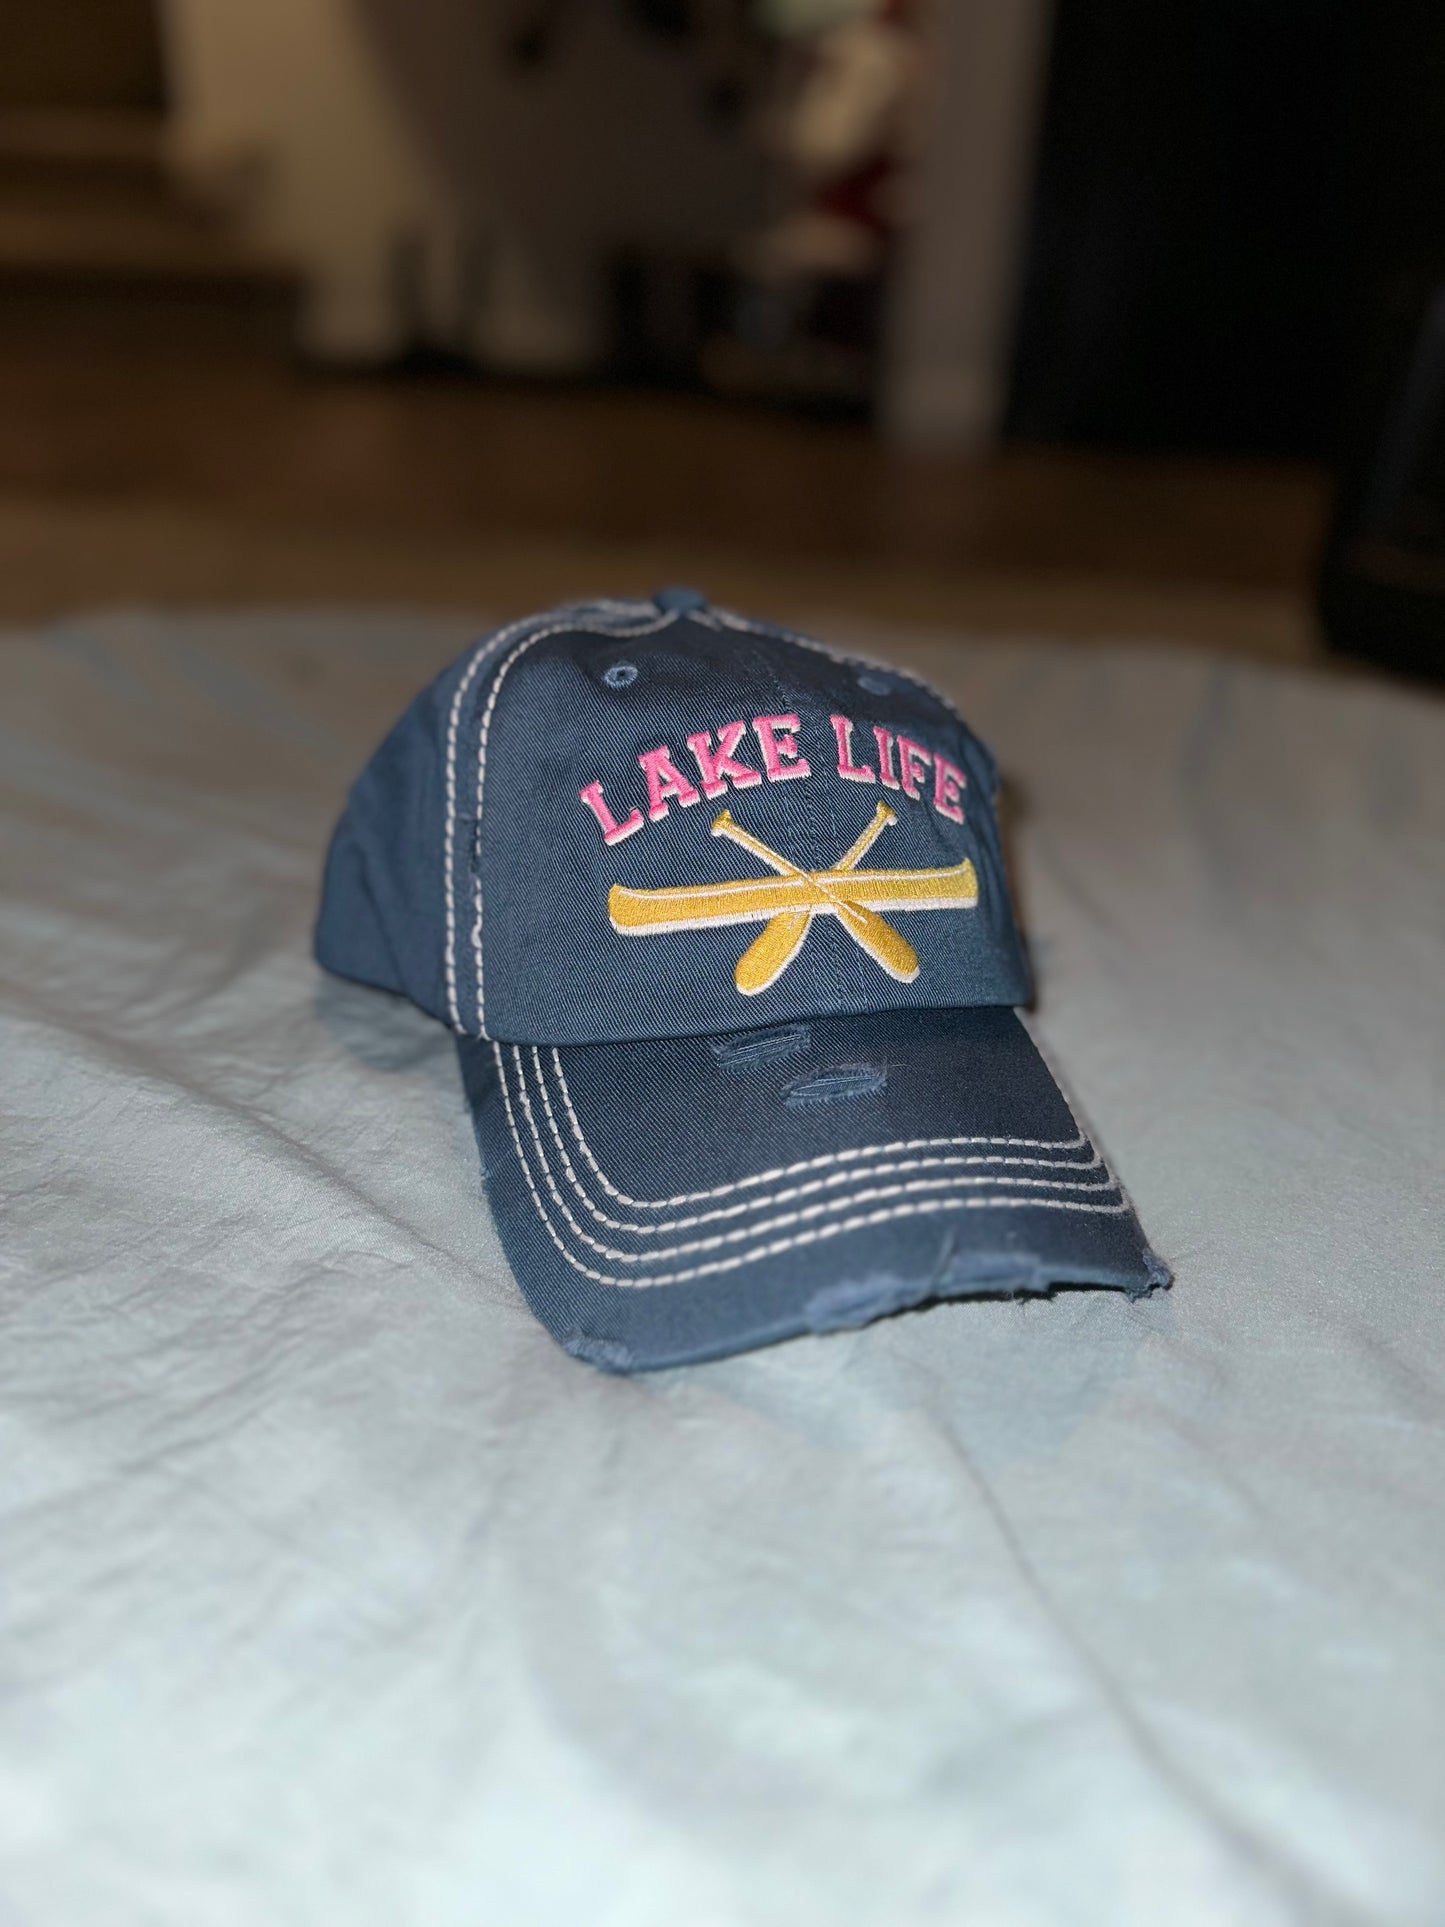 Lake Life hat